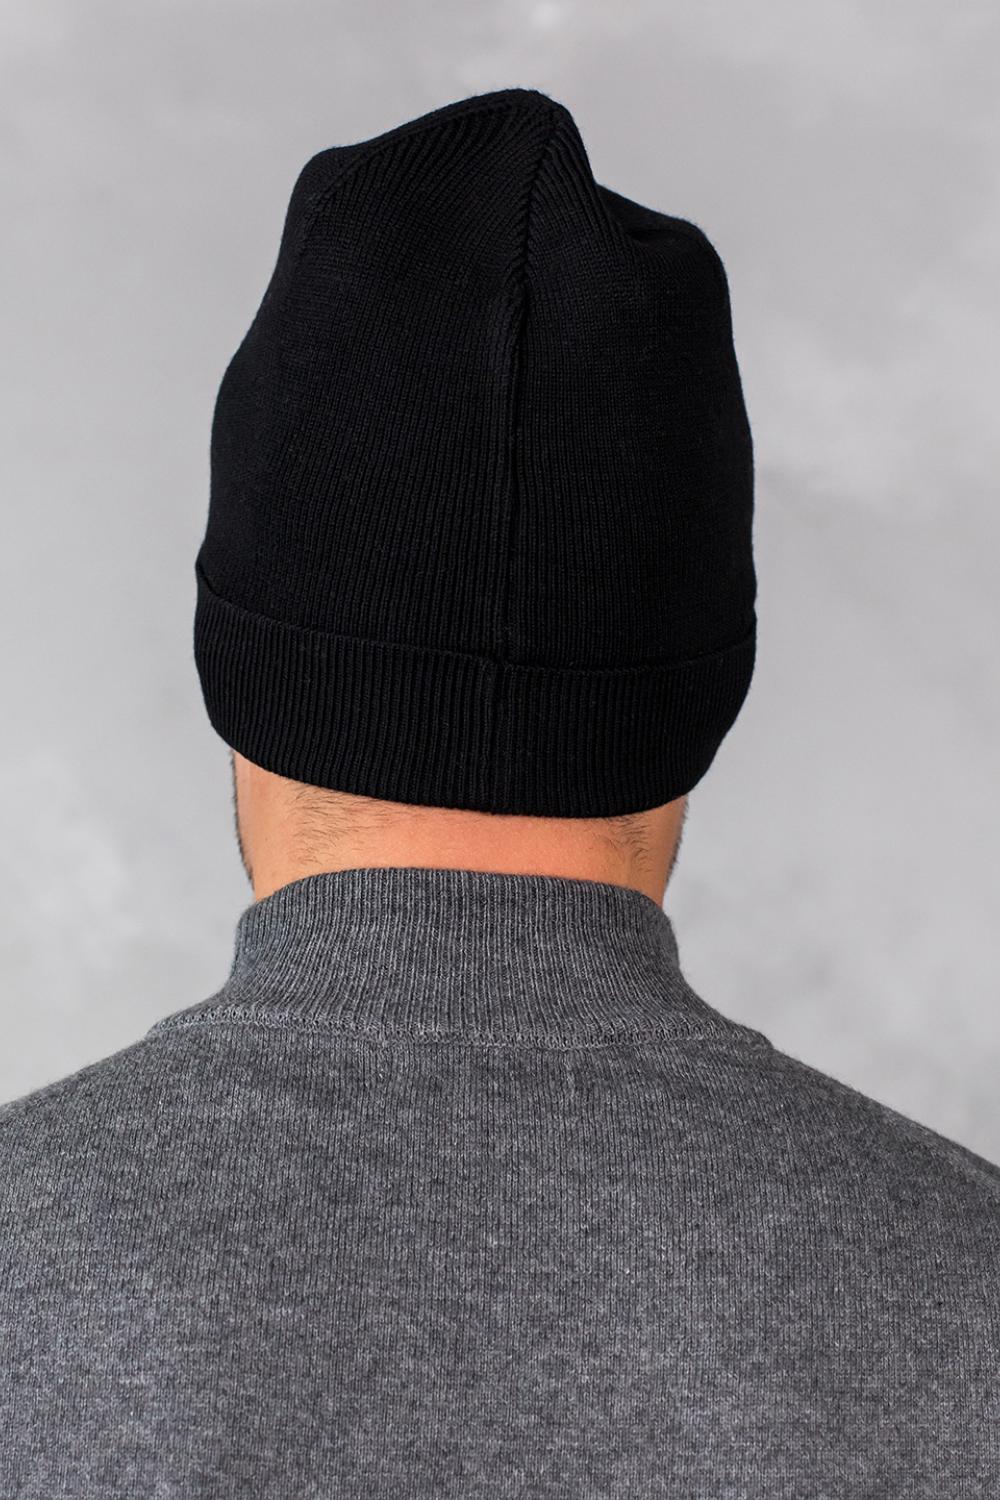 Men's hat 0018